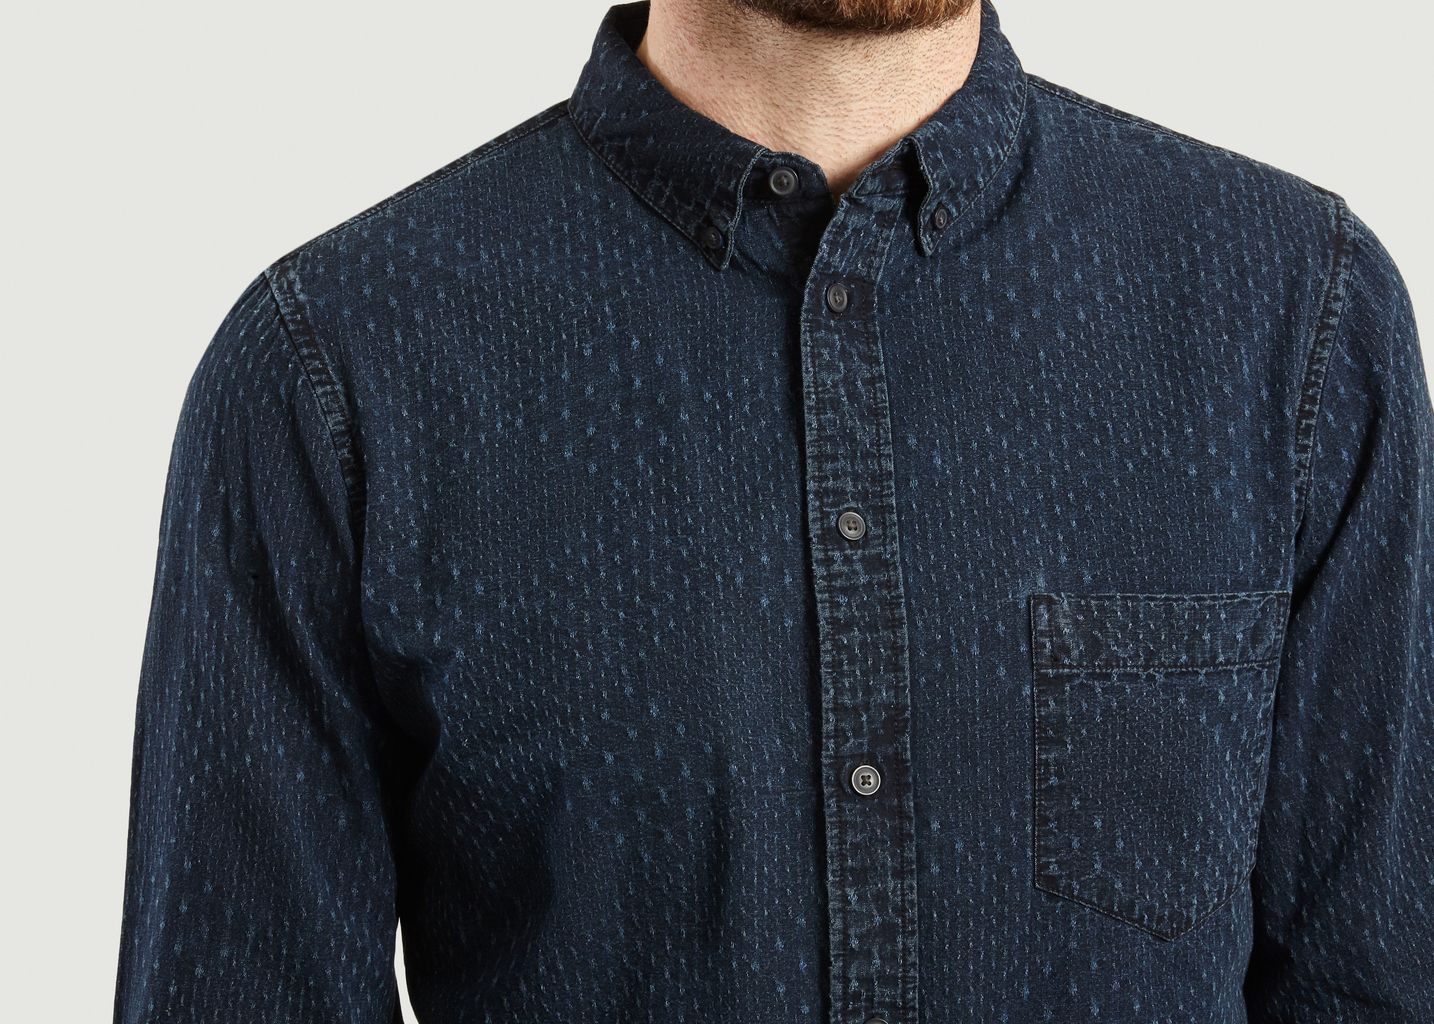 Stitched Micro Pattern Shirt - Levi's M&C